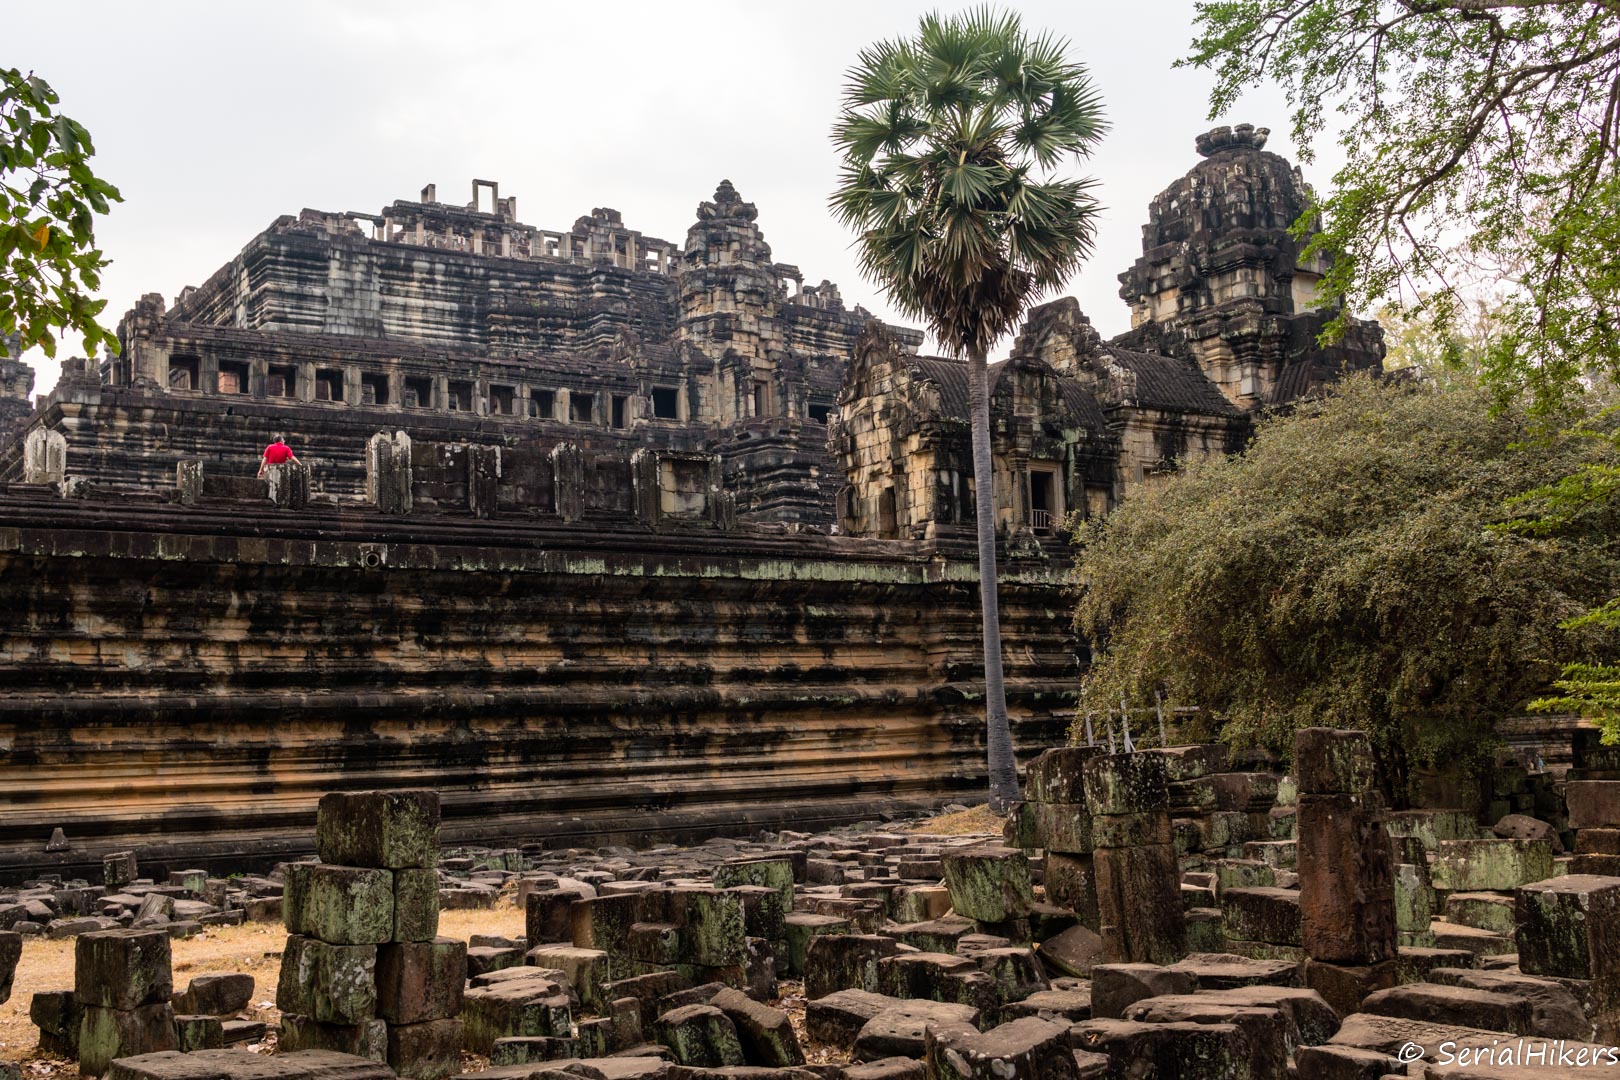 SerialHikers - Blog Voyage Alternatif SerialHikers - Voyage Engagé & Sans avion Temples d'Angkor: itinéraire d'un jour à vélo - Cambodge Cambodge, Asie du Sud-Est Patrimoine